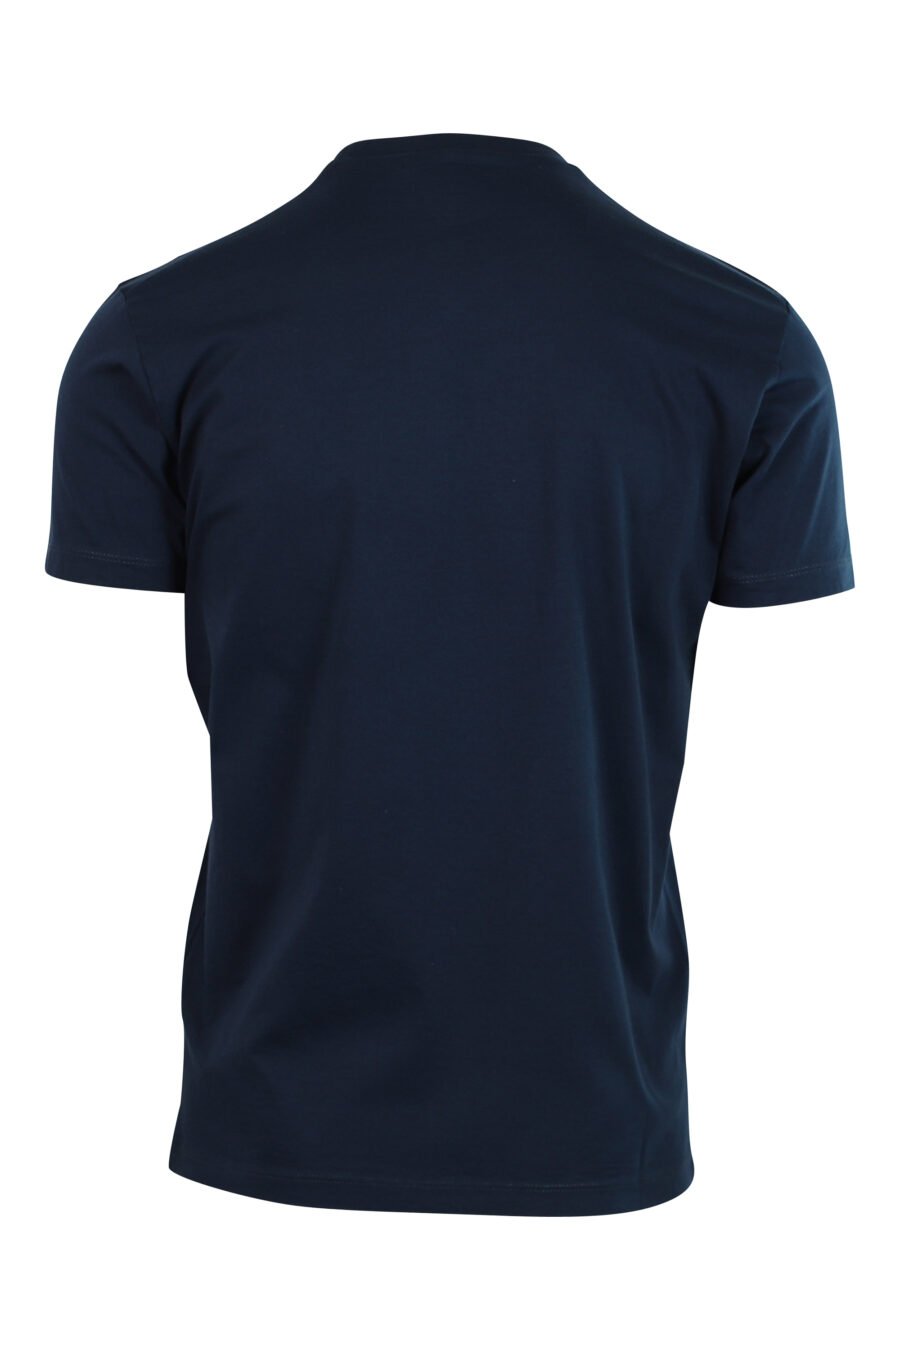 T-shirt azul escura com mini-logotipo vermelho num gráfico de contorno de folhas - 8054148046569 2